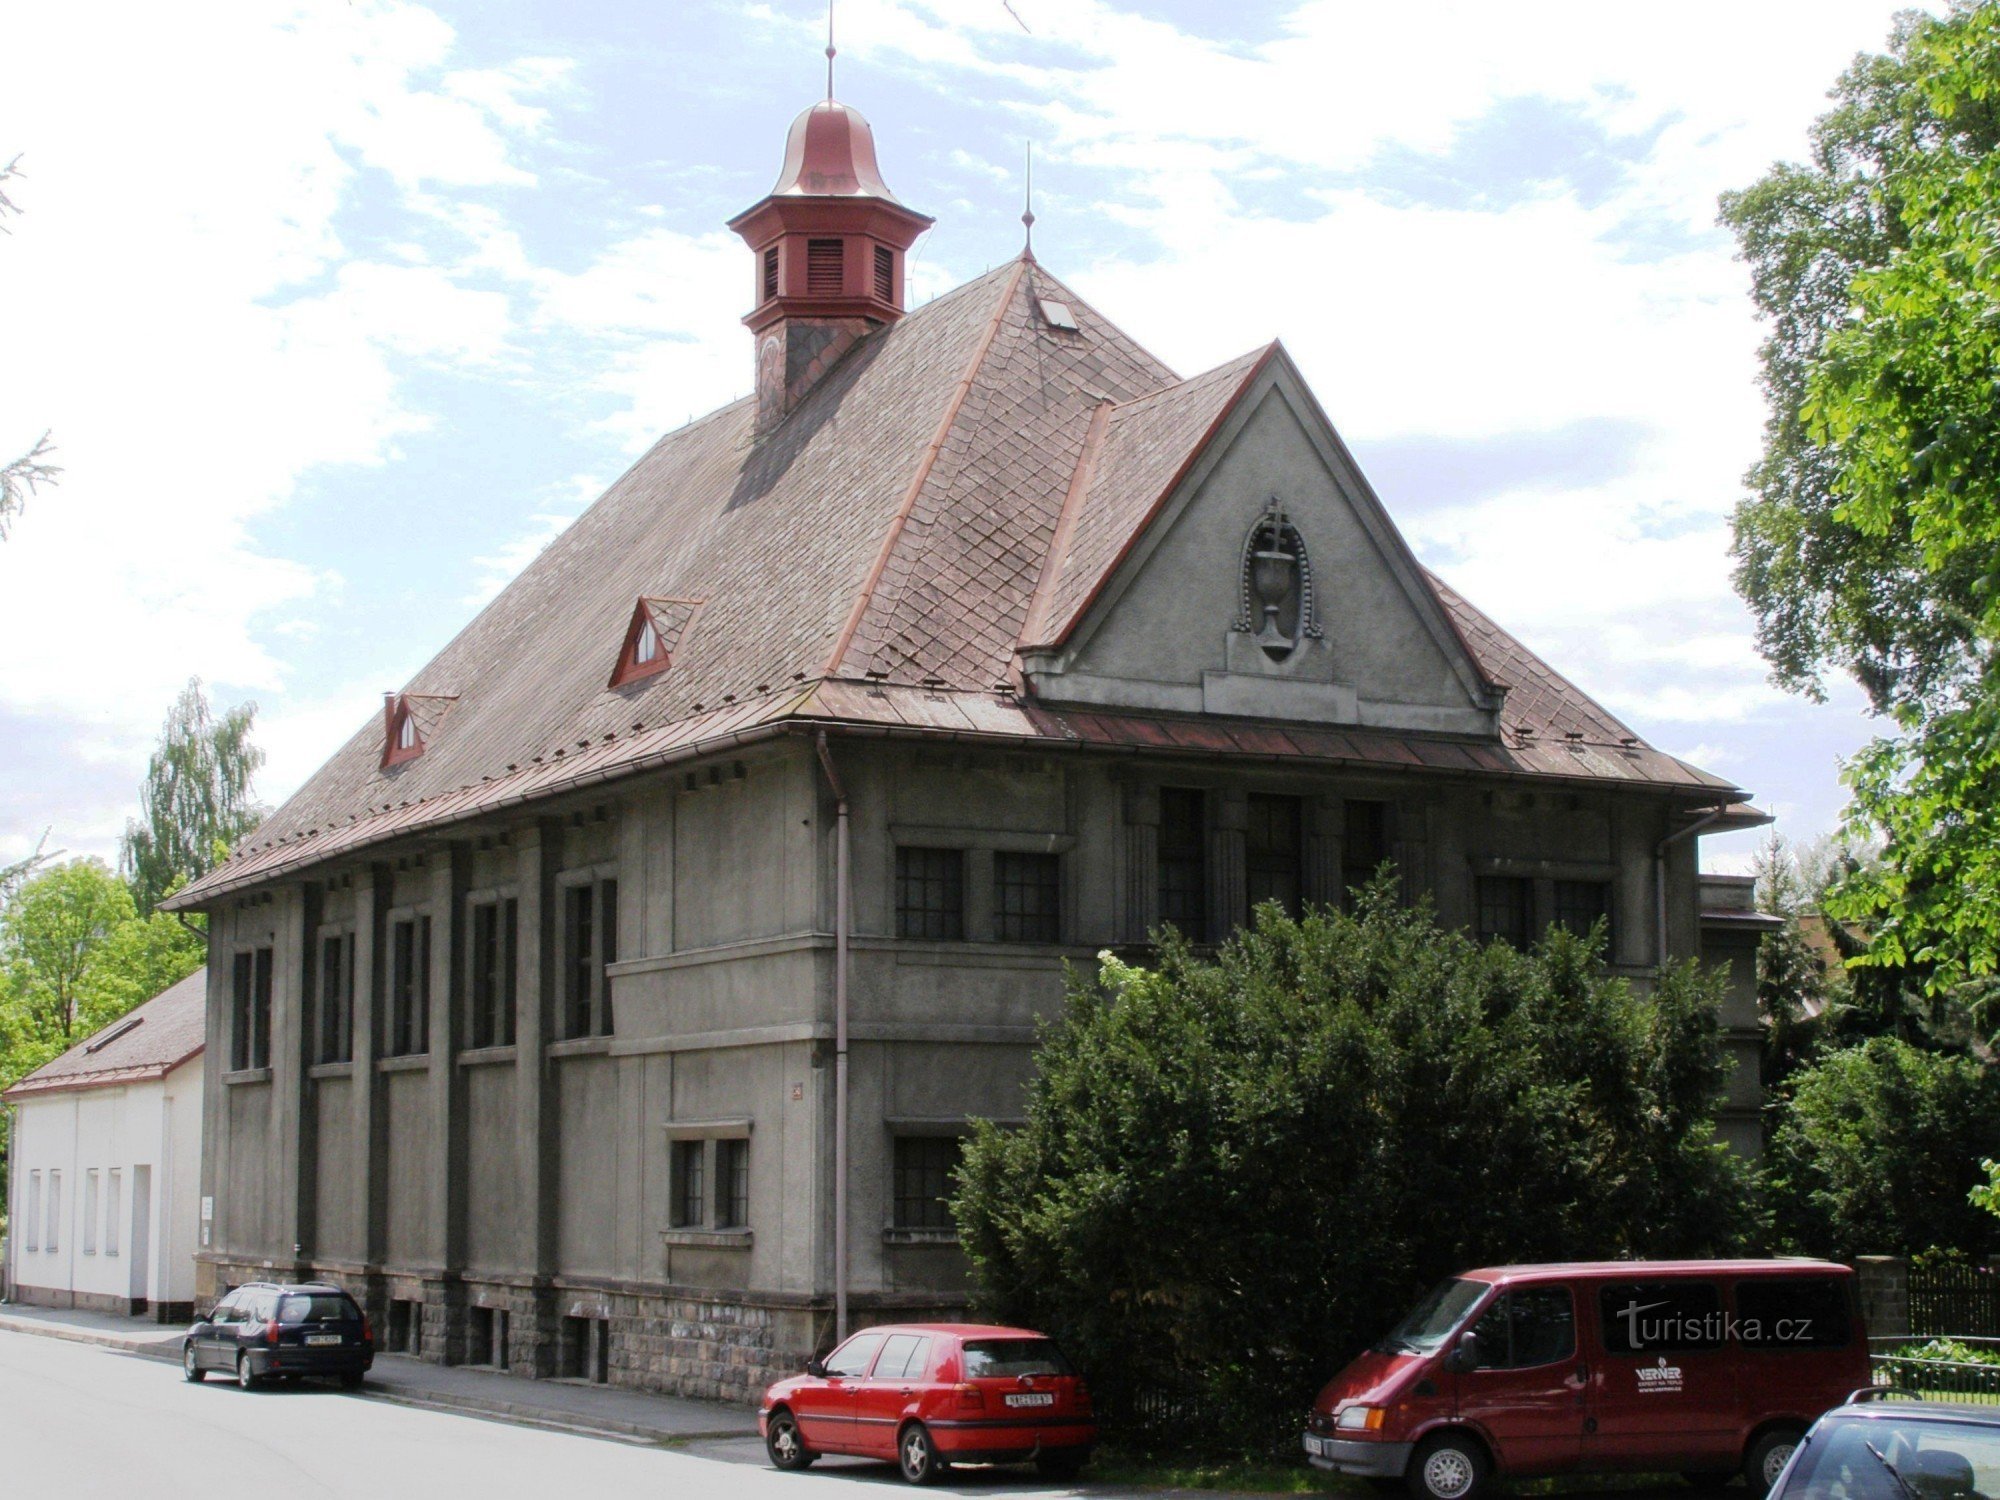 Гронов - церковь Чехословацкой гуситской церкви